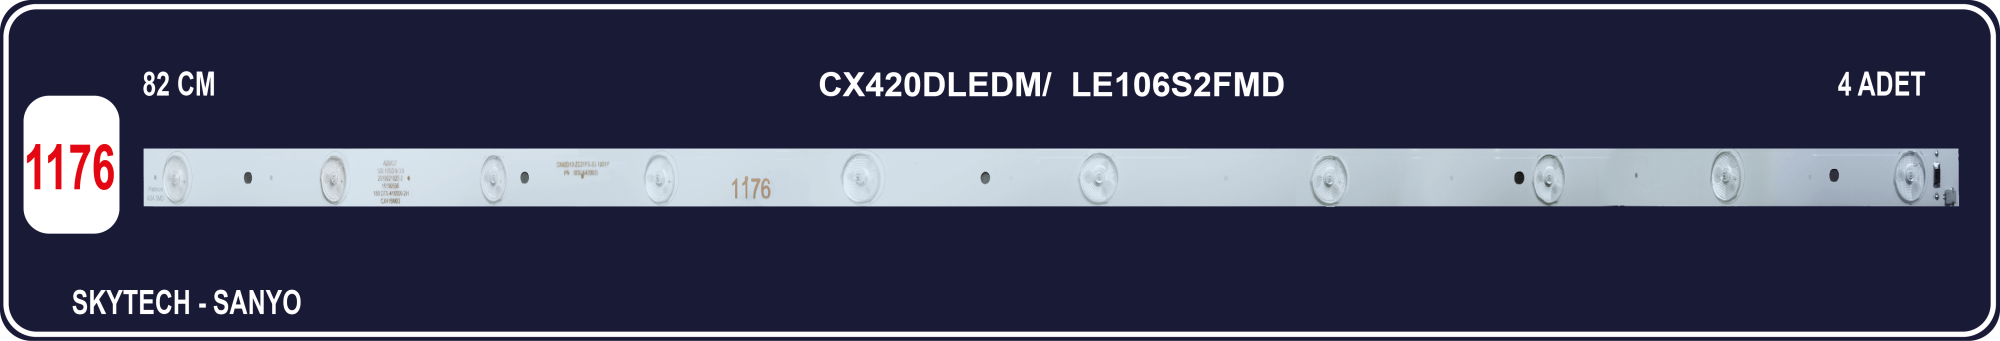 SKYTECH-SANYO  LE106S2FMD-CX42D10-ZC21FG-03 303CX420035-CX420DLEDM